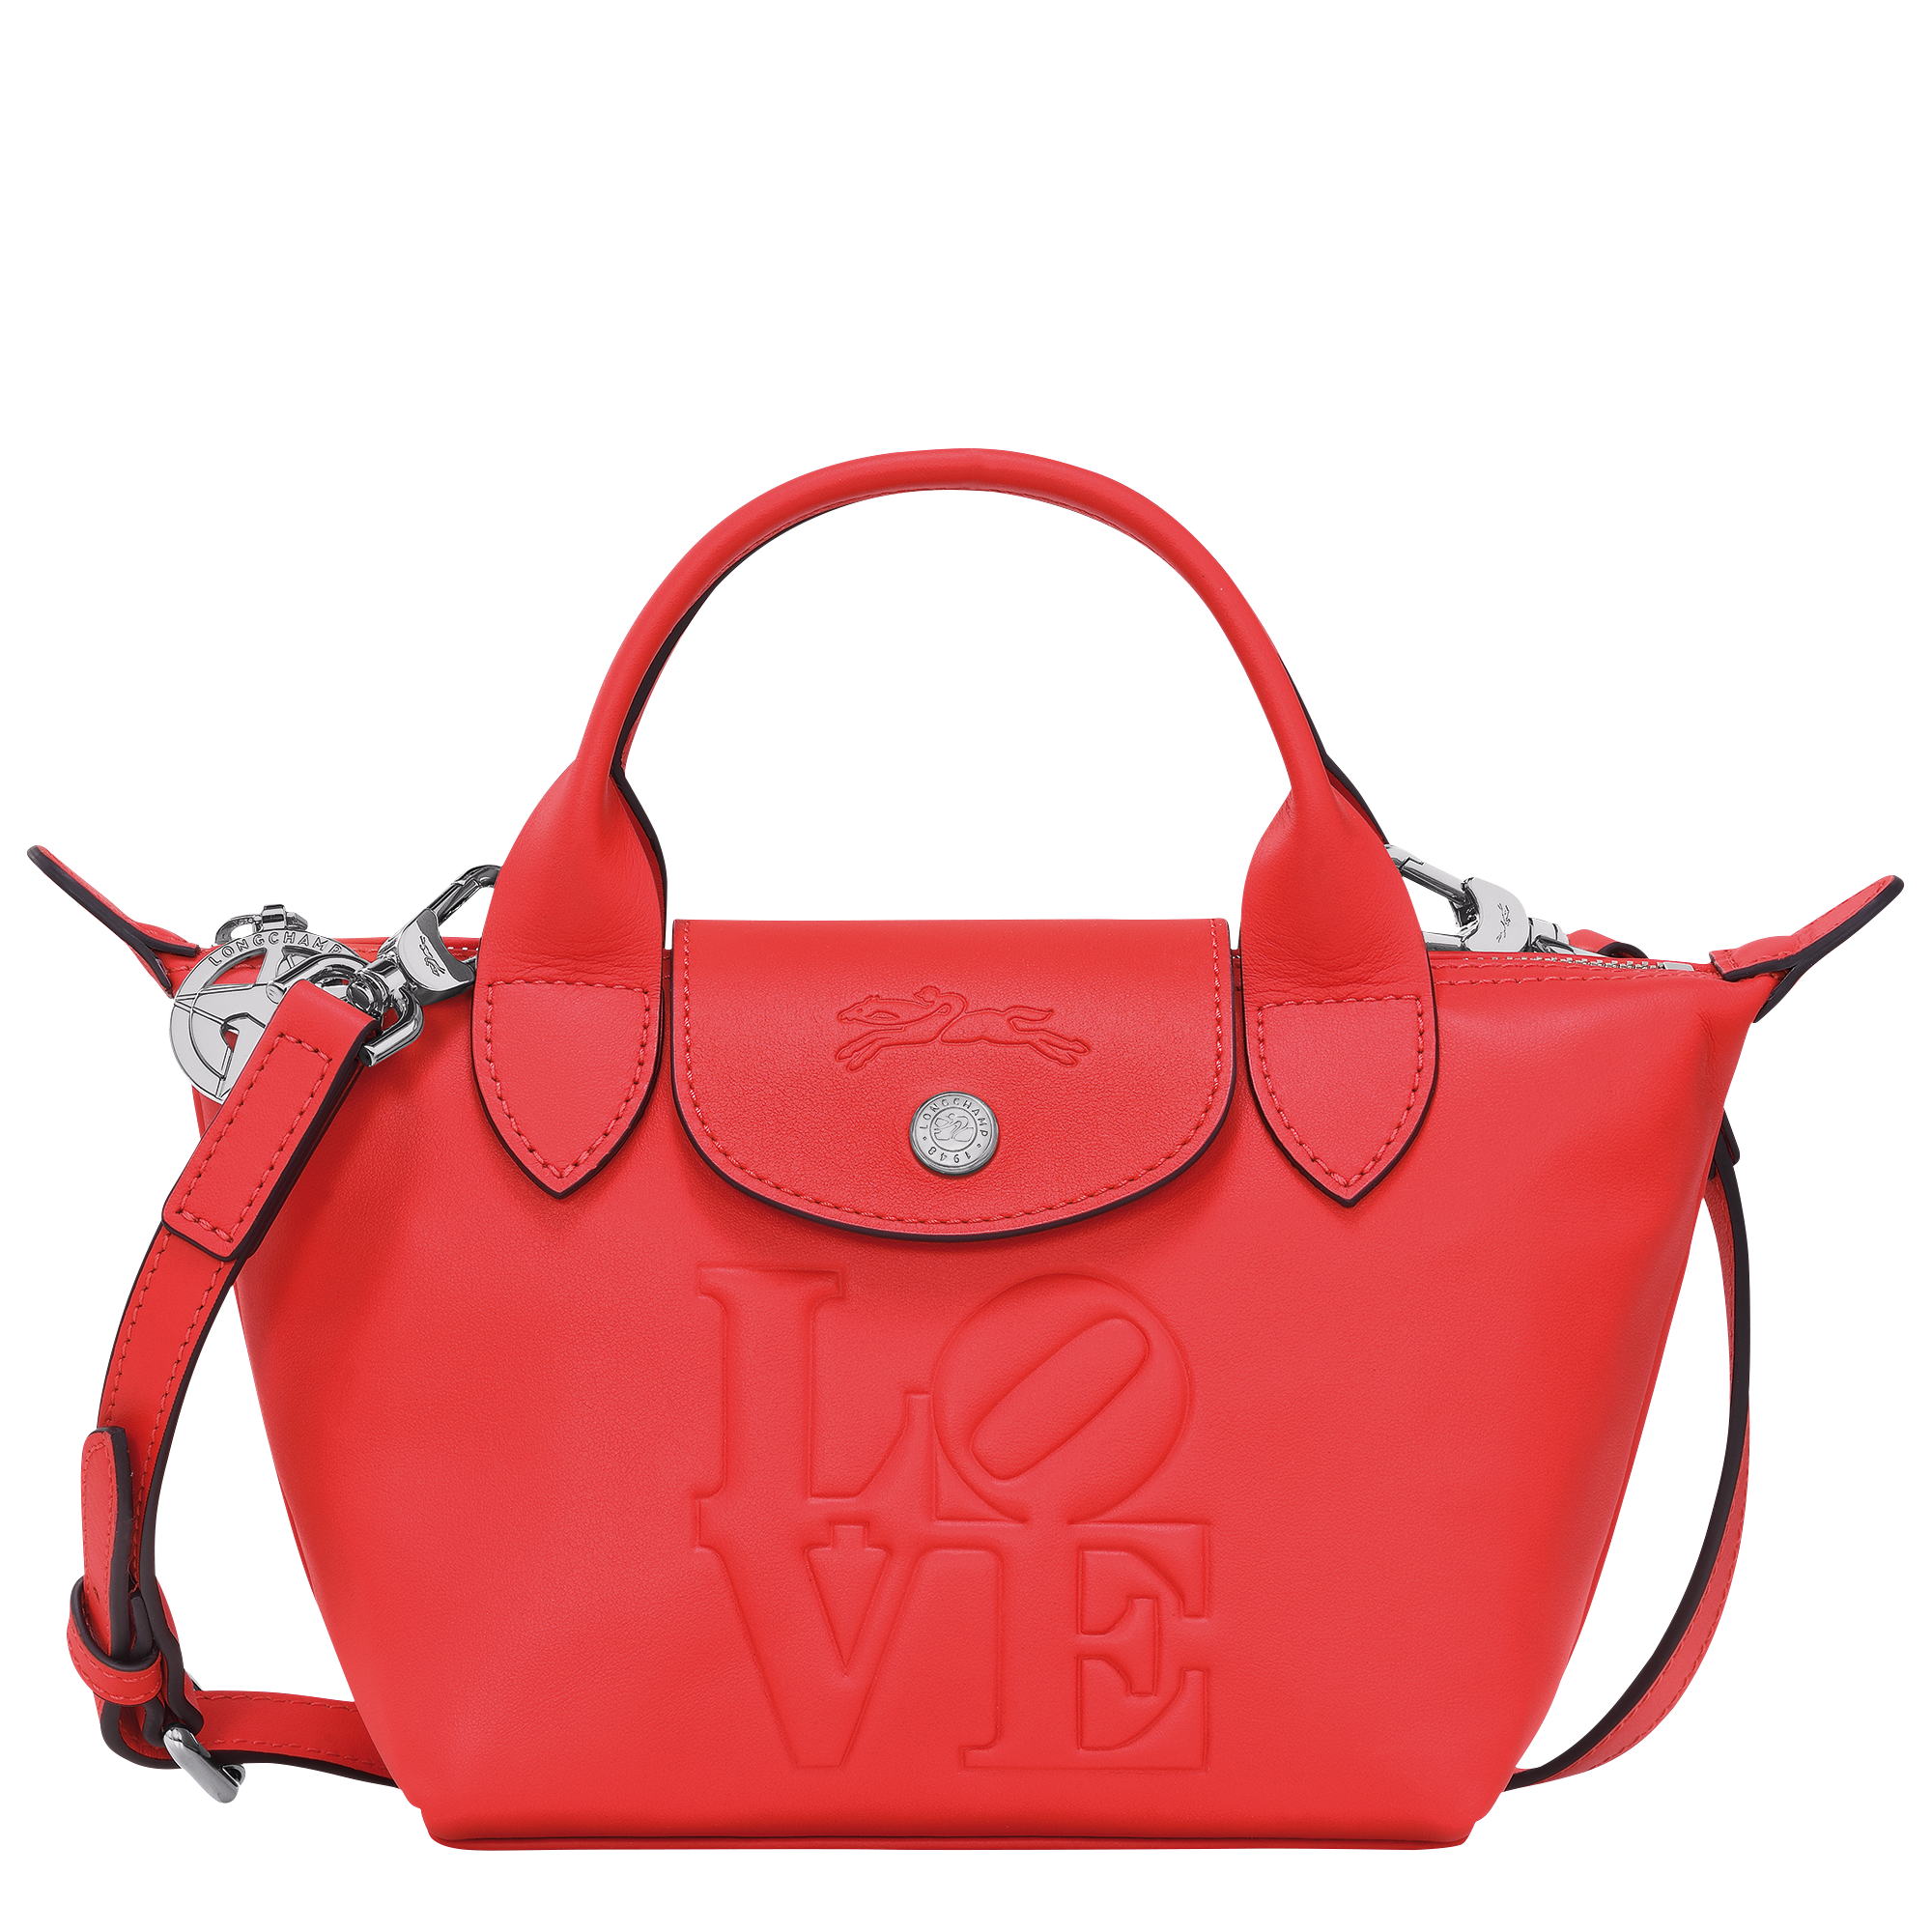 Longchamp x Robert Indiana Handbag XS, Red